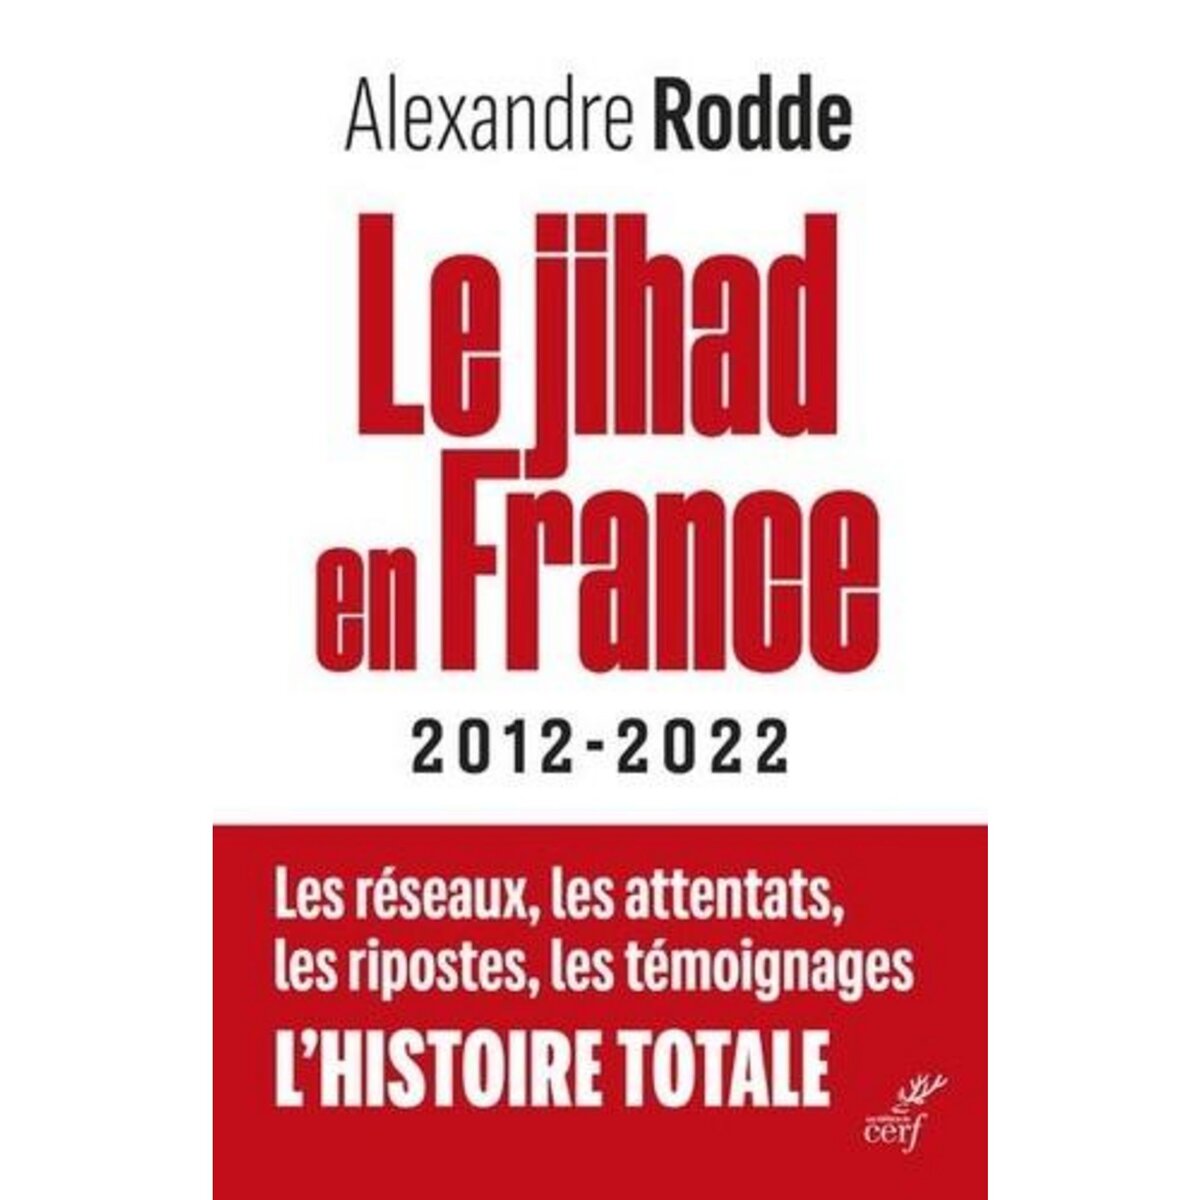  LE JIHAD EN FRANCE. 2012-2022, Rodde Alexandre